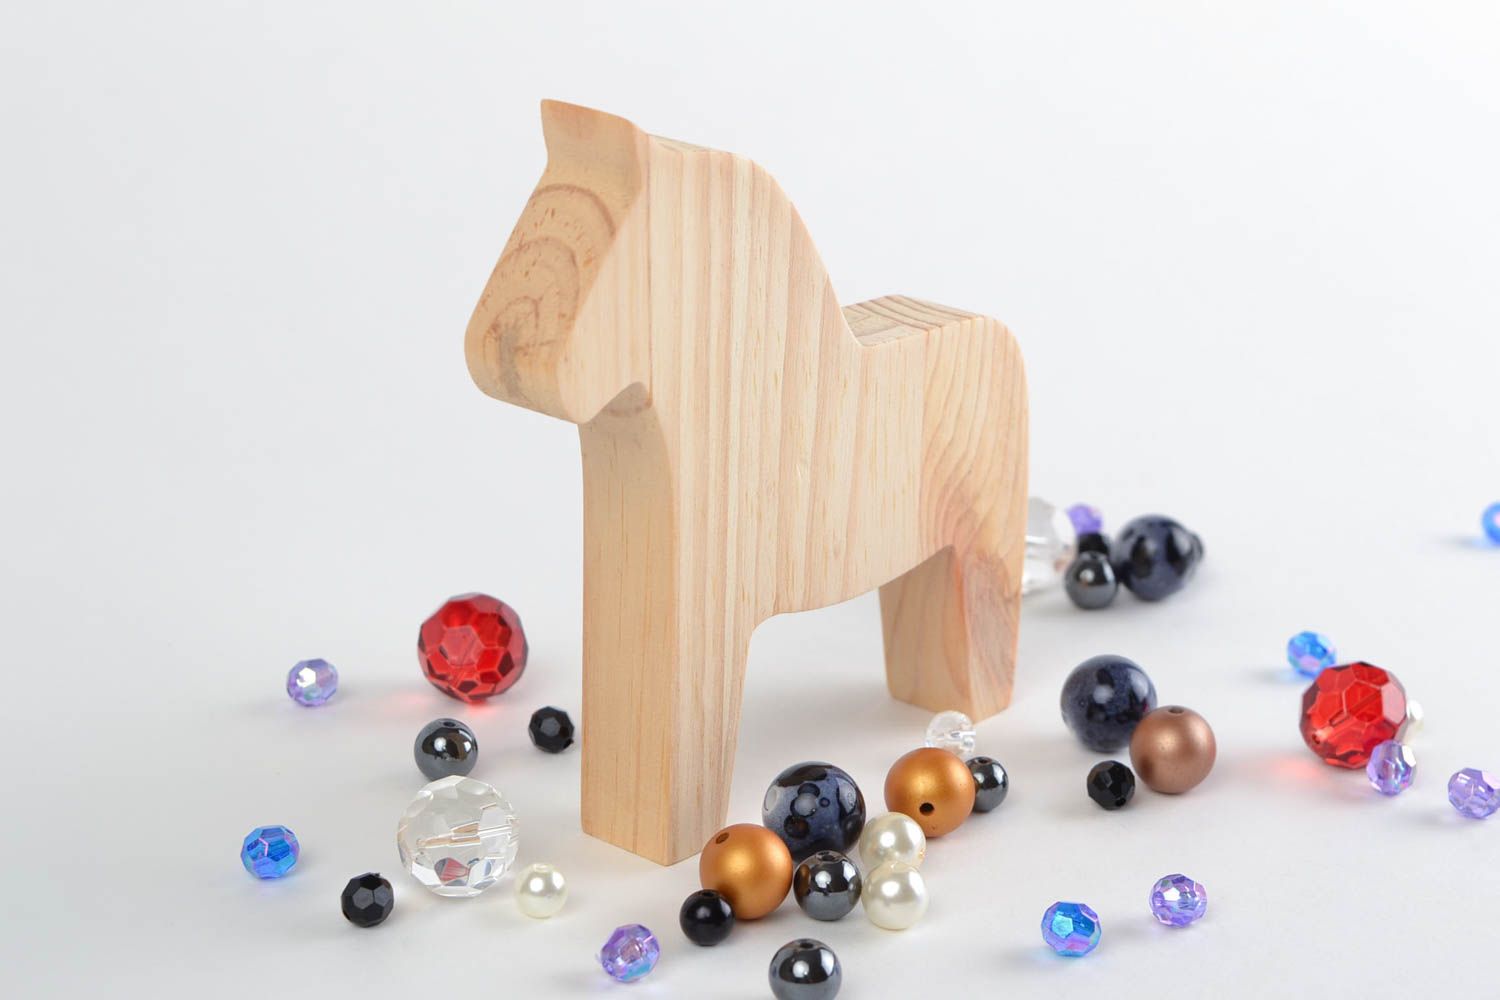 Игрушка из дерева ручной работы лошадка светлая маленького размера для детей фото 1